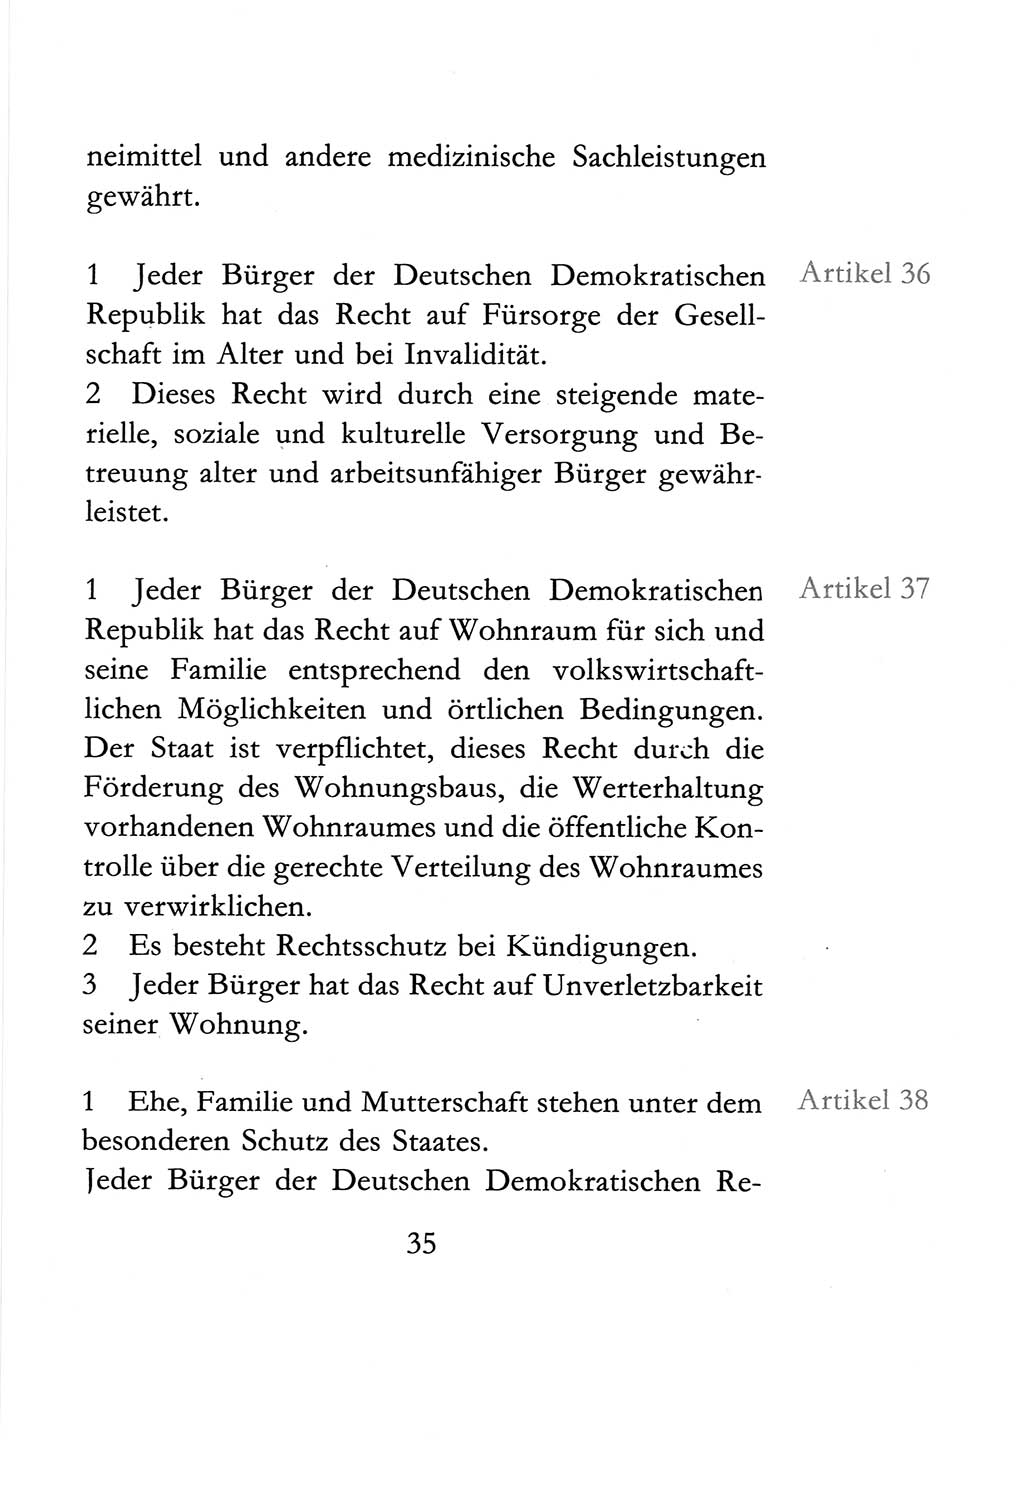 Verfassung der Deutschen Demokratischen Republik (DDR) vom 6. April 1968, Seite 35 (Verf. DDR 1968, S. 35)